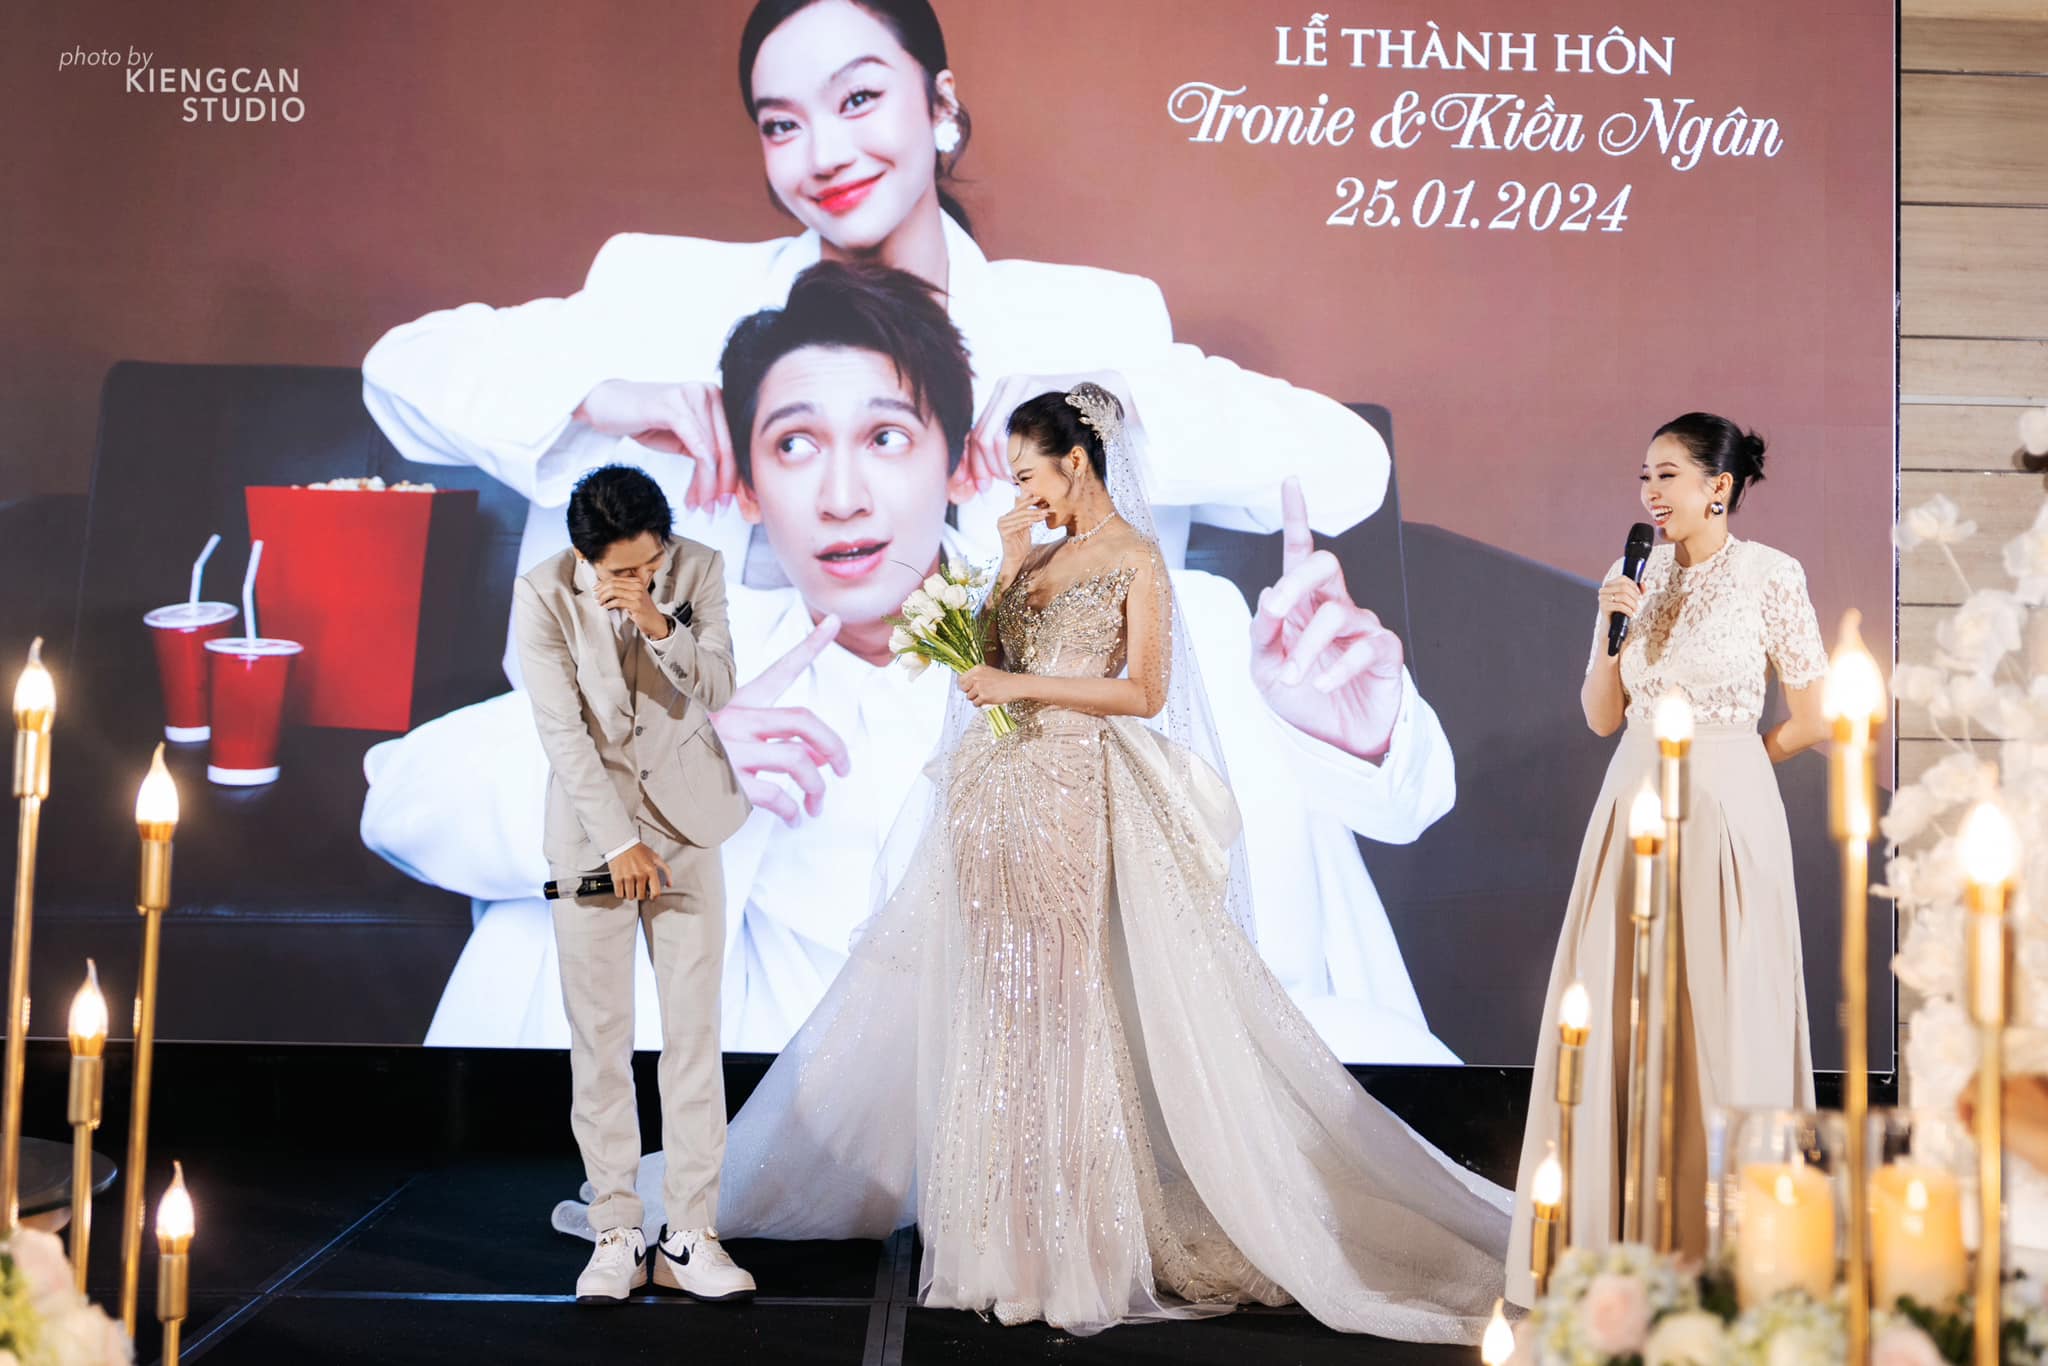 Hoa hậu Kiều Ngân bật khóc khi chồng quỳ gối cầu hôn trong lễ cưới- Ảnh 3.